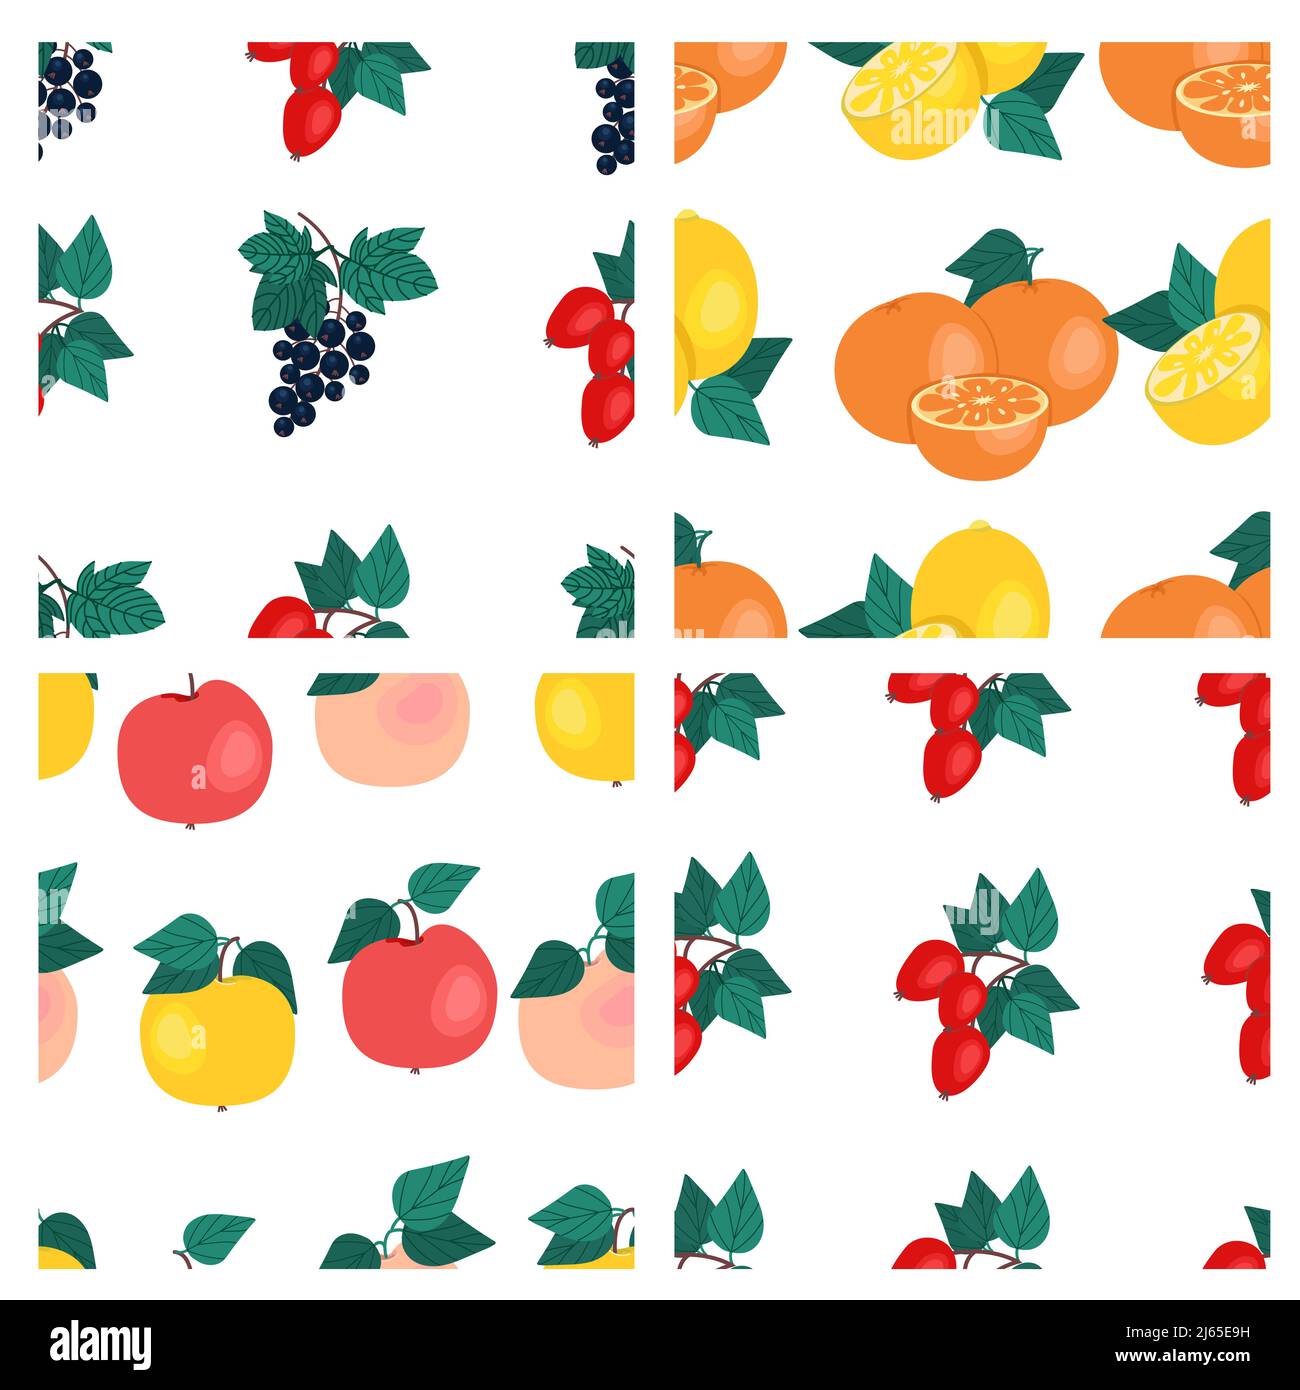 Set of fruit seamless patterns. Oranges, black currants, dog rose, lemons, apples, fruit prints. Vector illustration Stock Vector